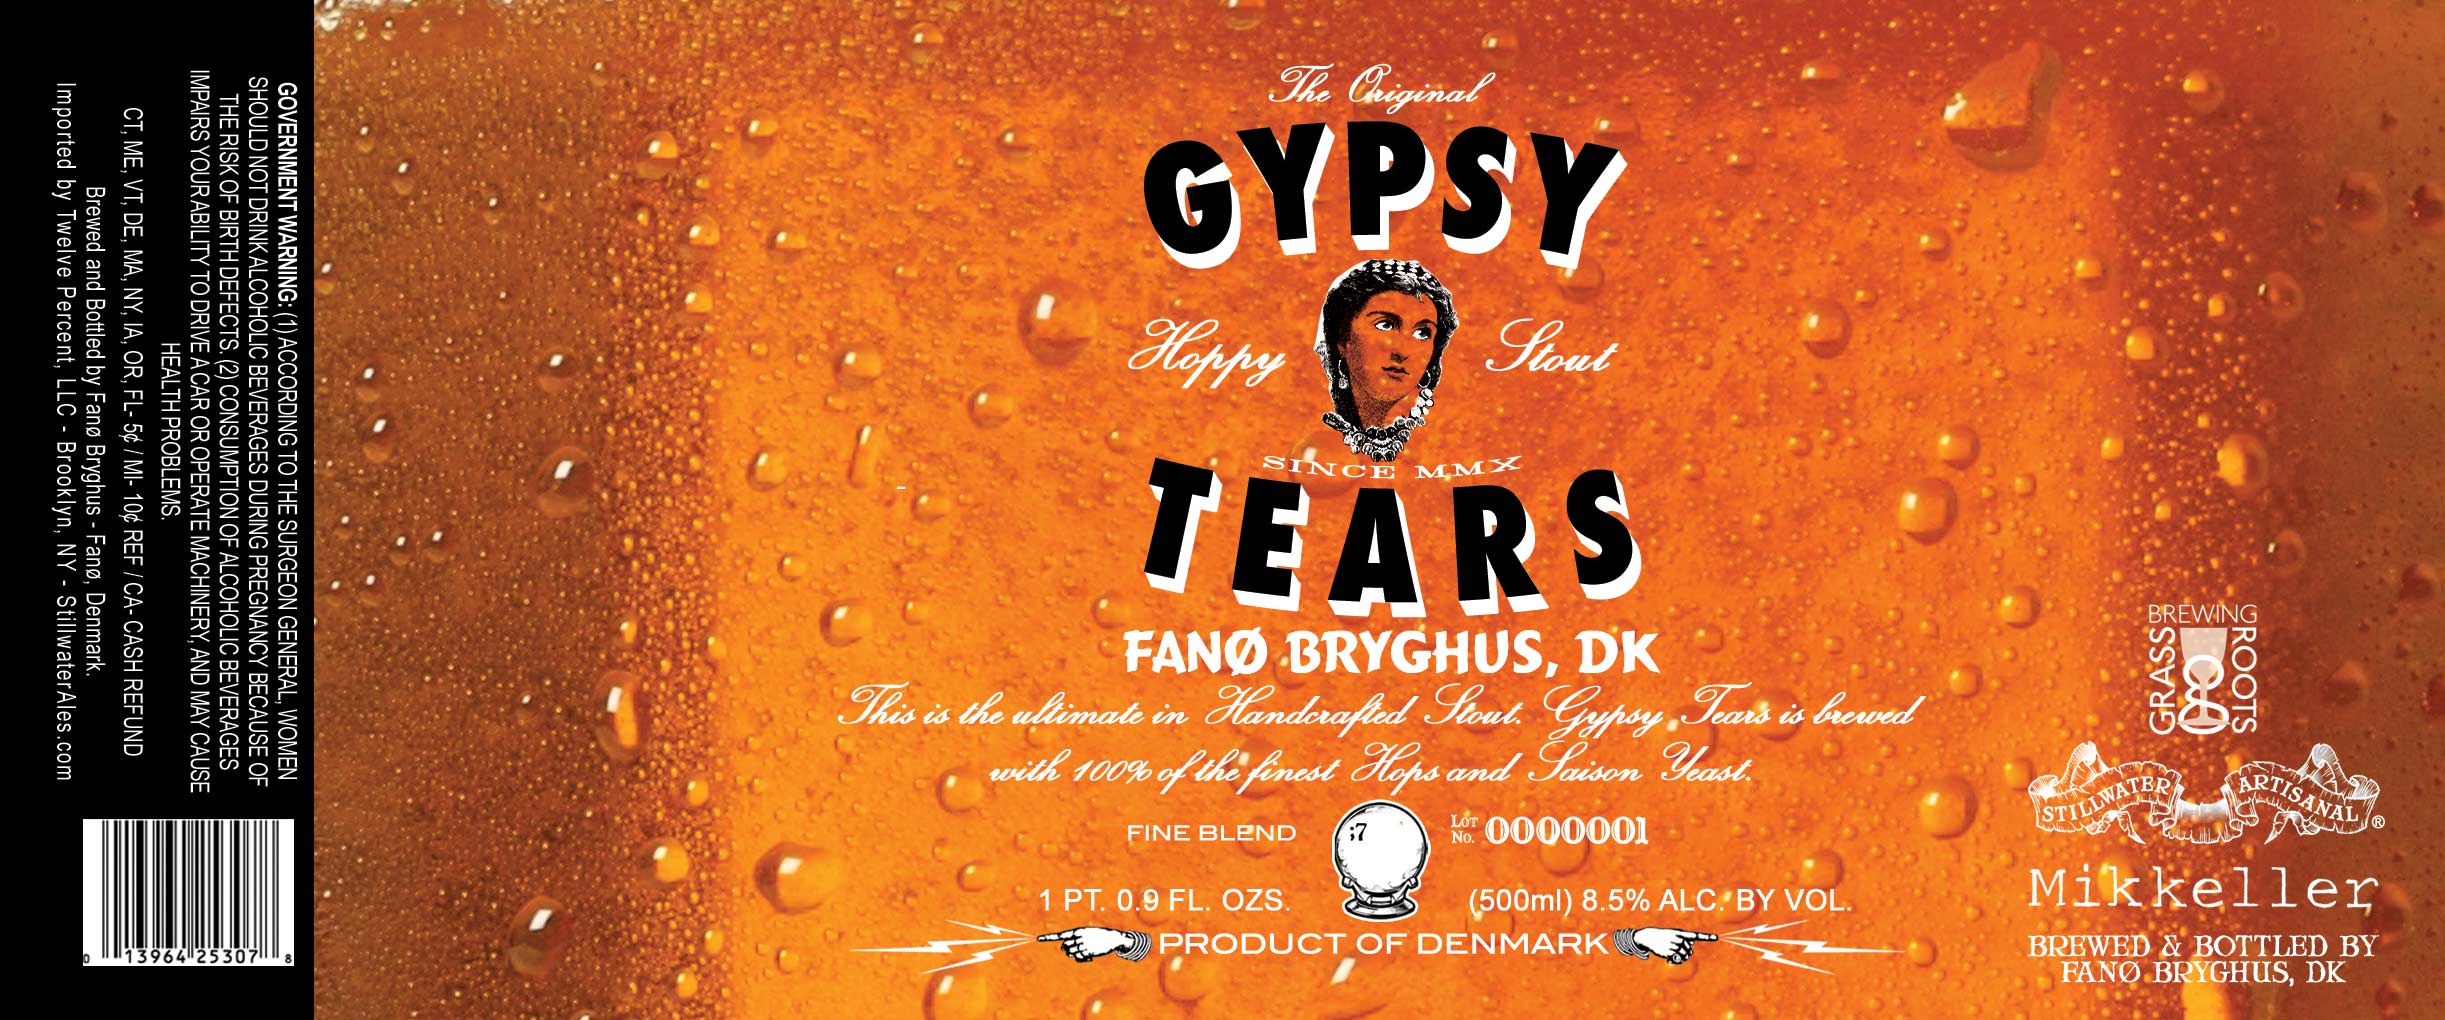 Stillwater Gypsy Tears